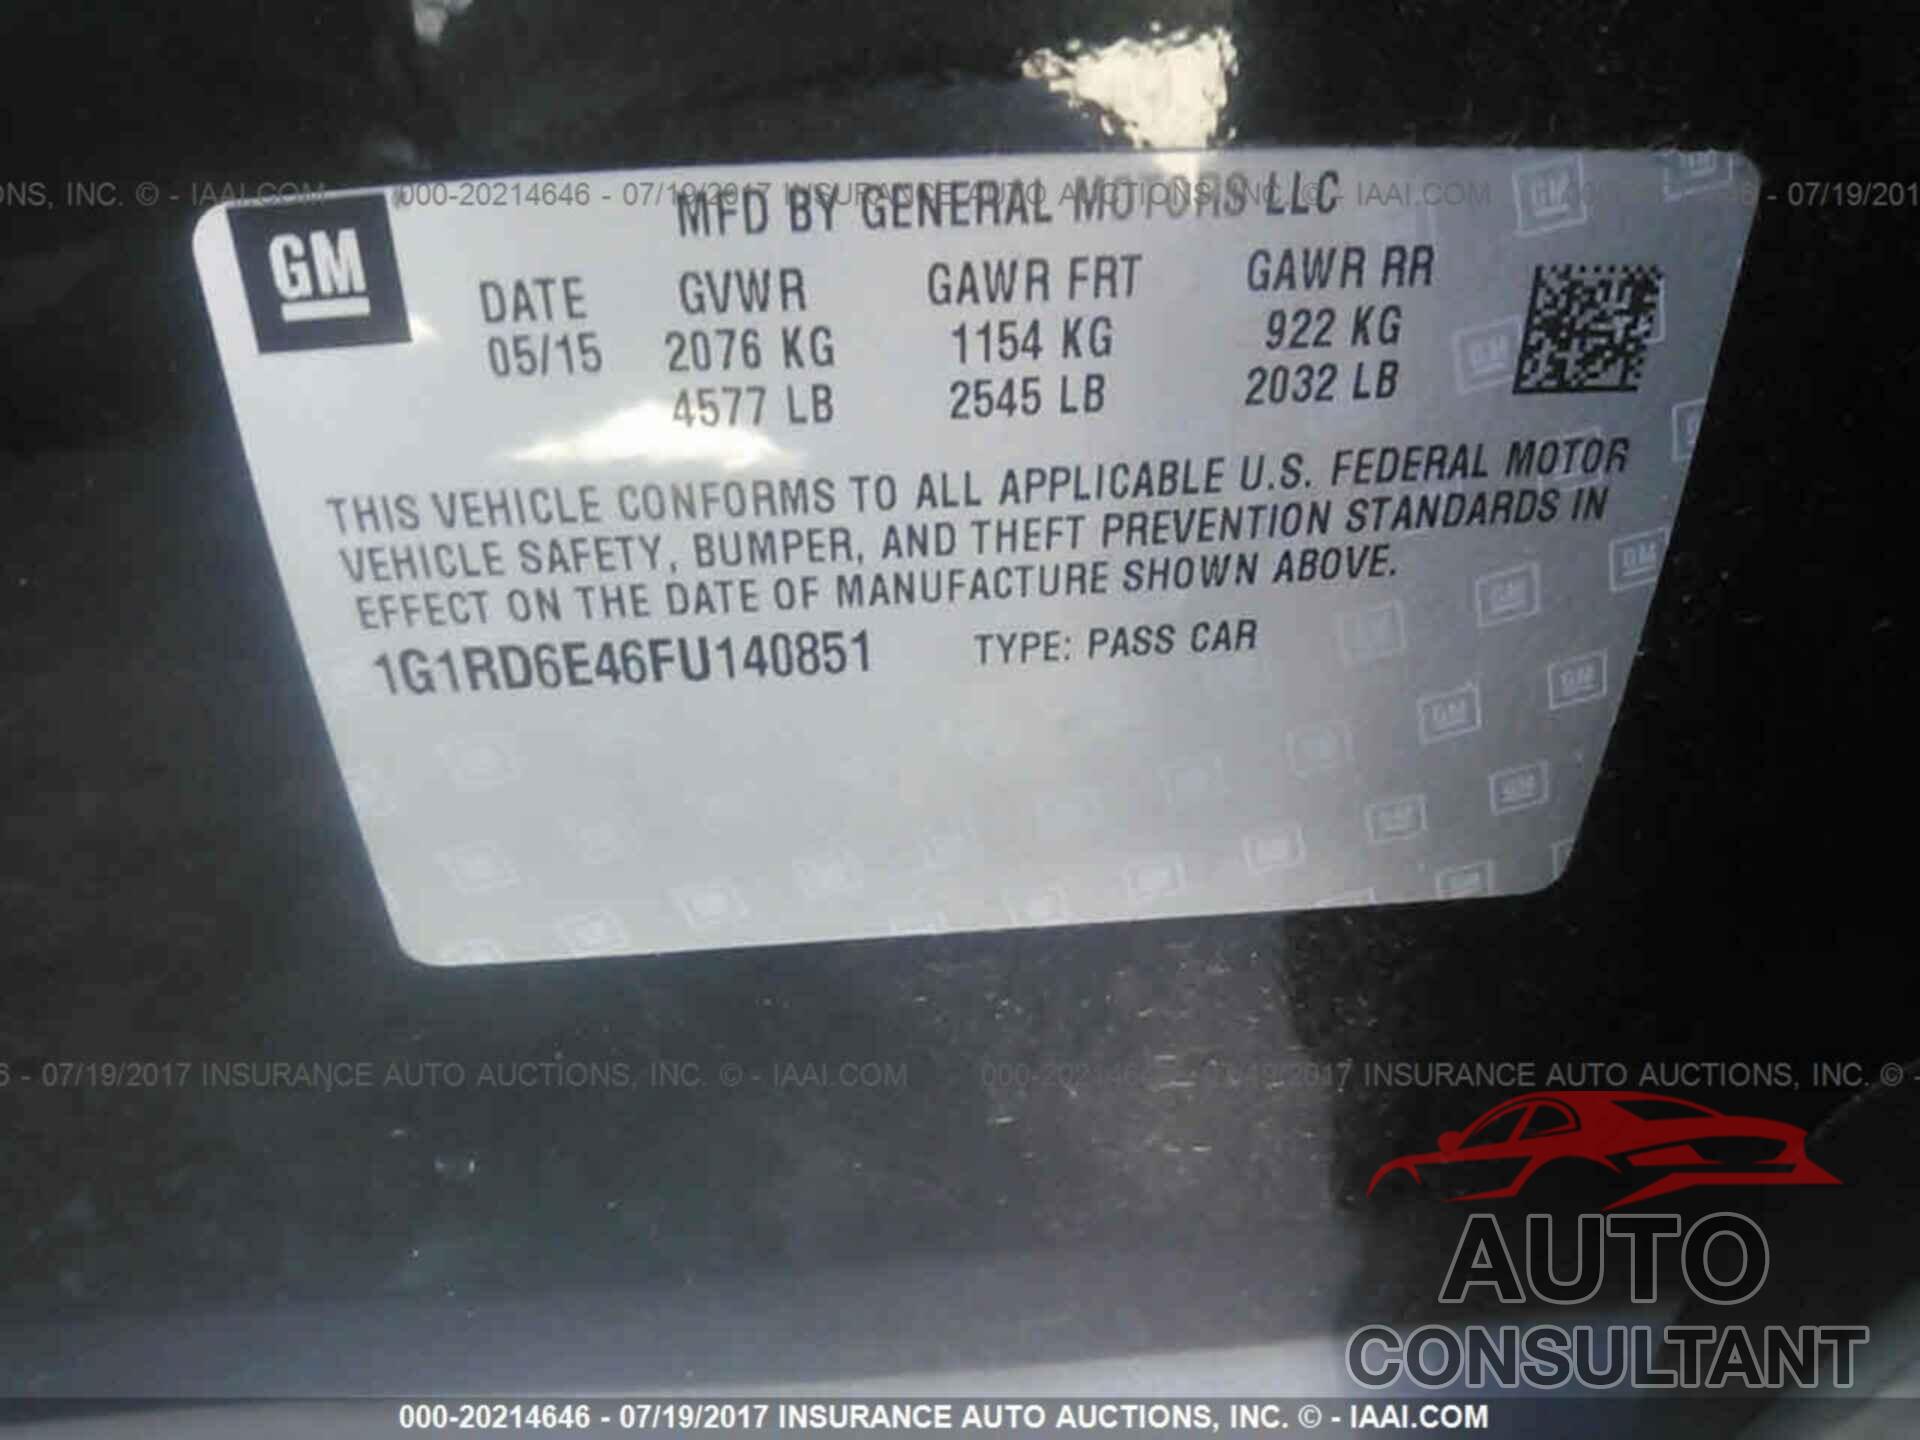 Chevrolet Volt 2015 - 1G1RD6E46FU140851